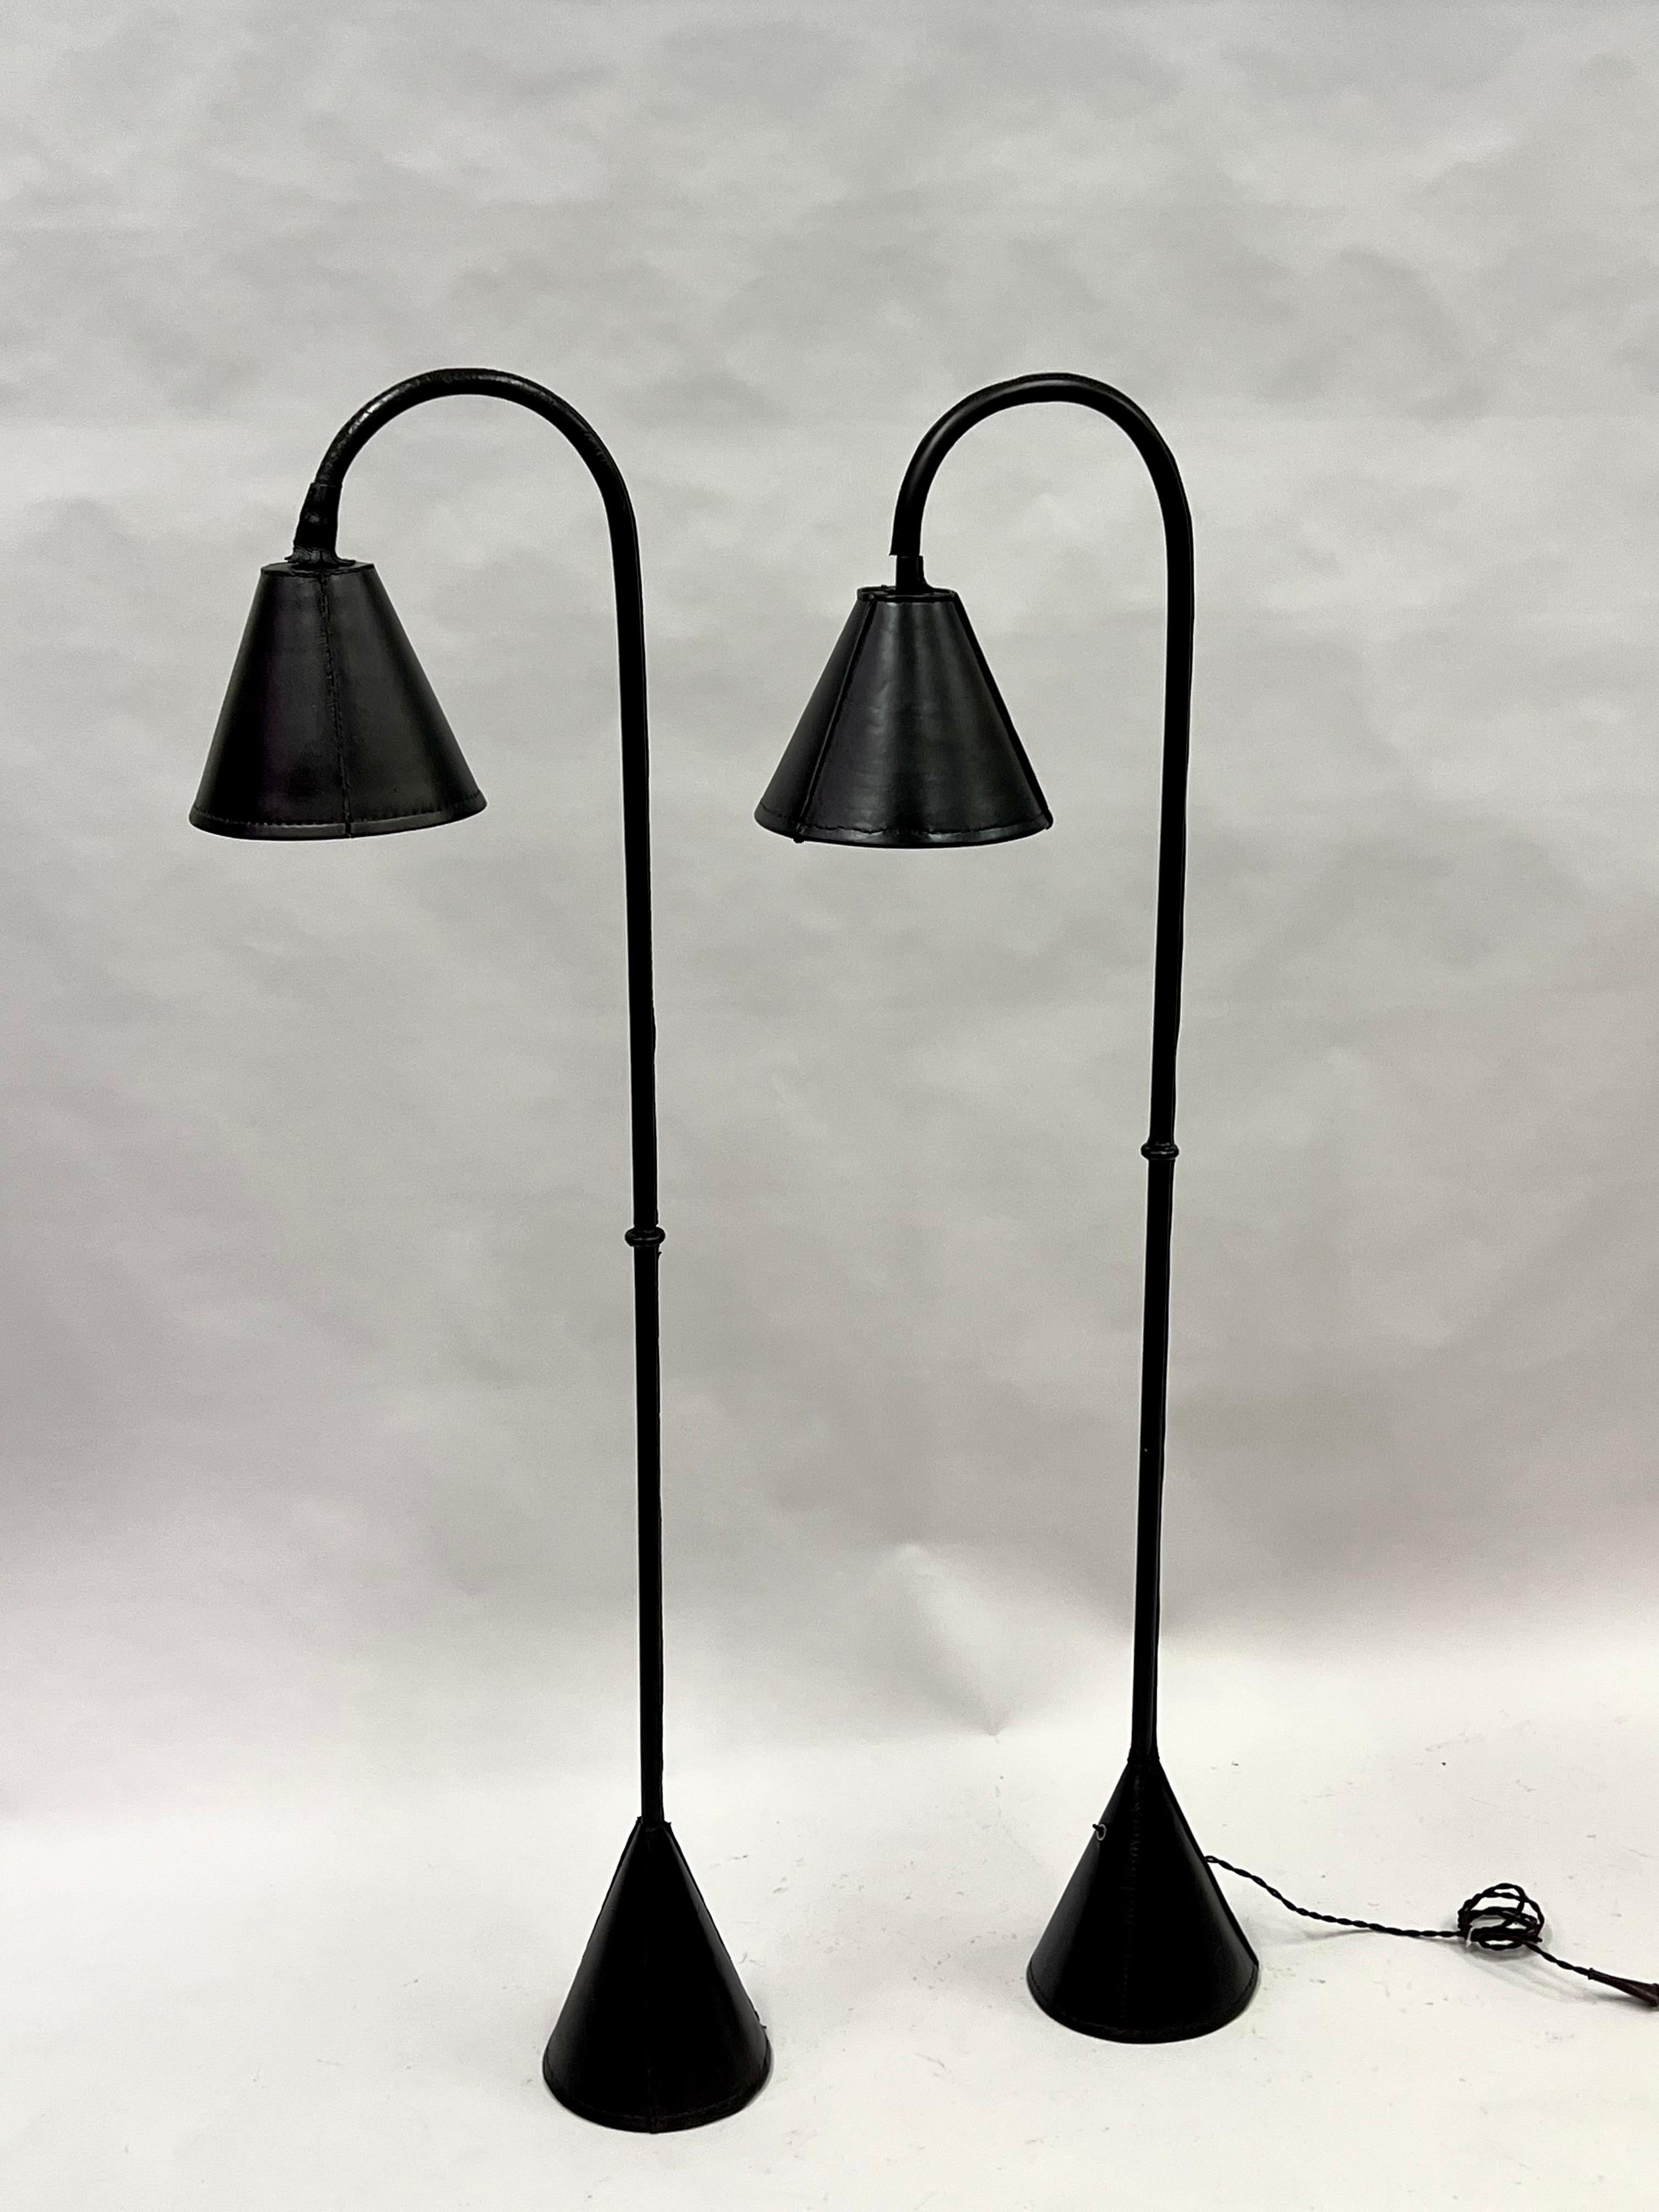 Ein elegantes Paar französischer Stehlampen aus der Mitte des Jahrhunderts, handgenäht 
Schwarzes Leder des französischen Meisterdesigners des 20. Jahrhunderts, Jacques Adnet, um 1955. Dieses klassische, handgefertigte Modell des renommierten